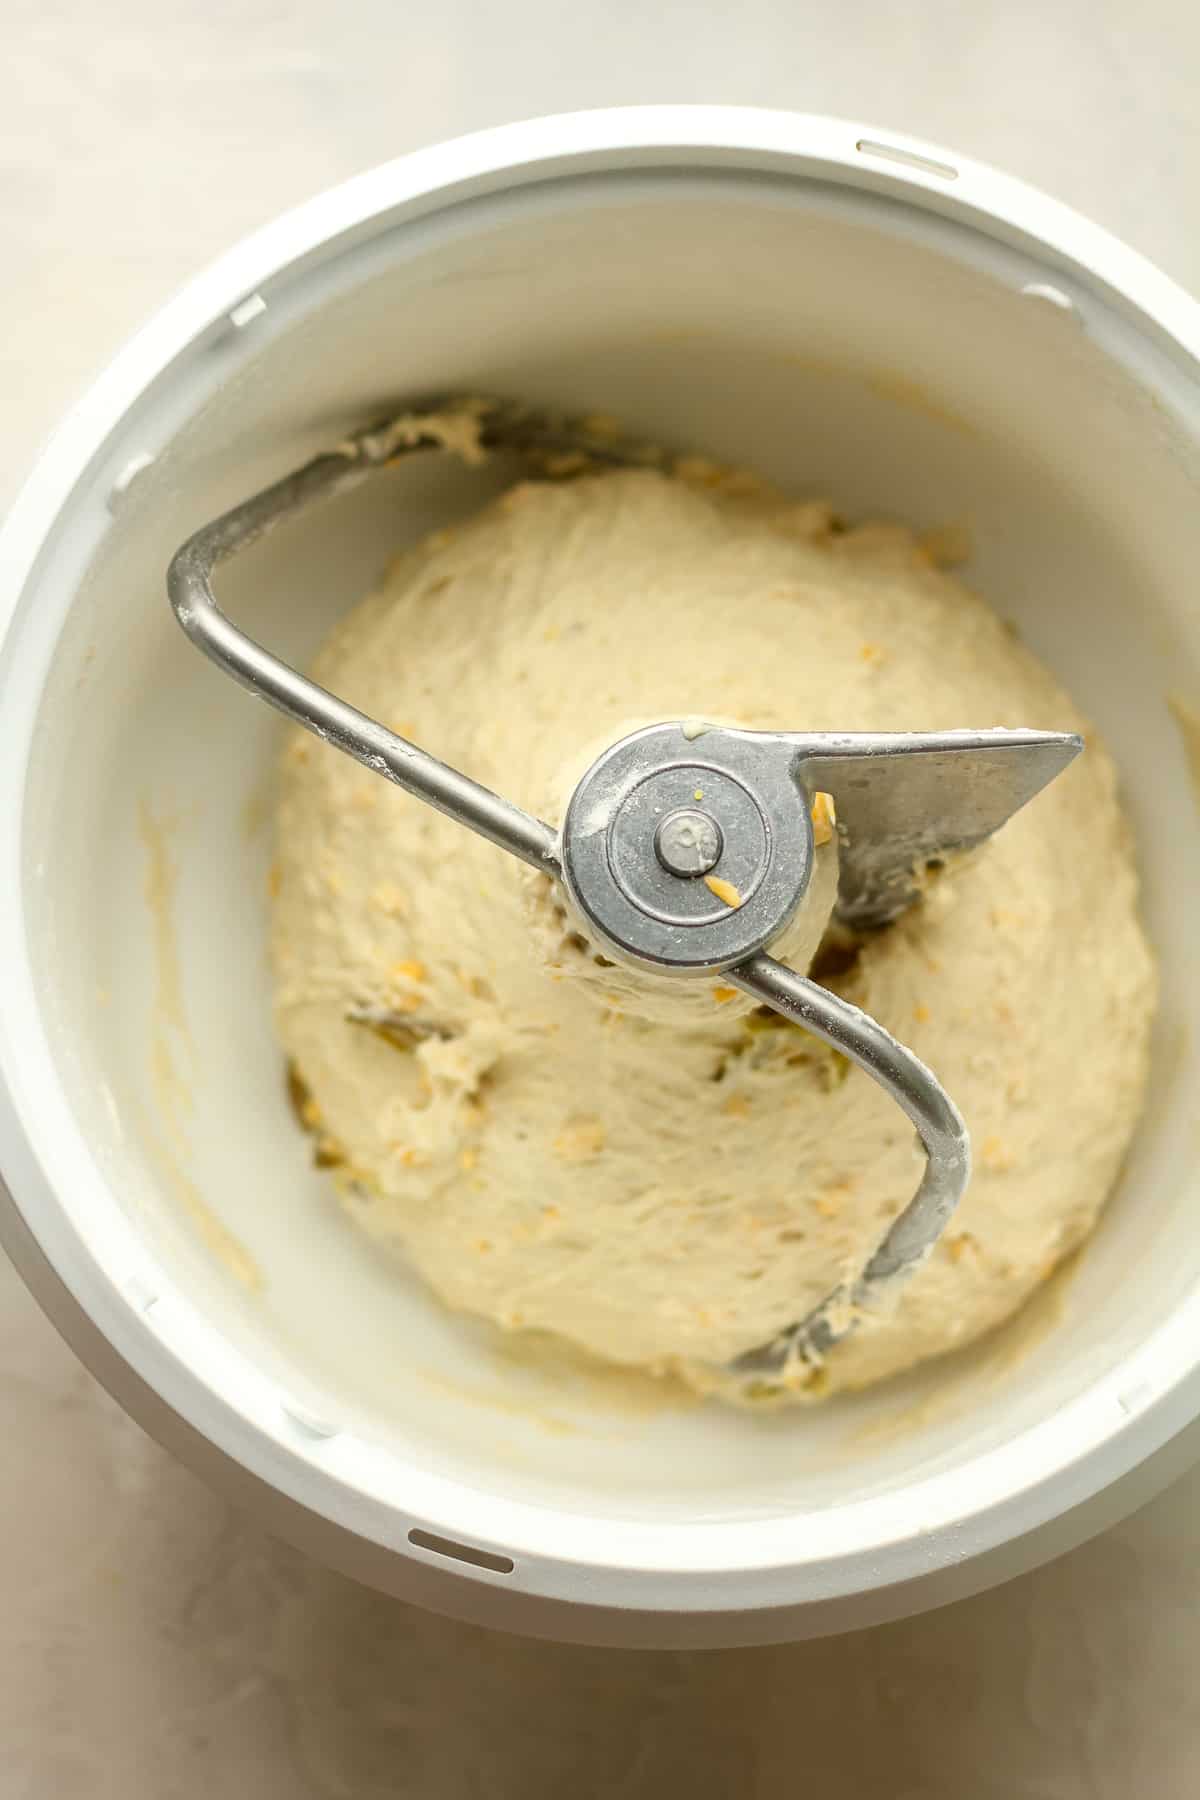 A mixe of the dough.